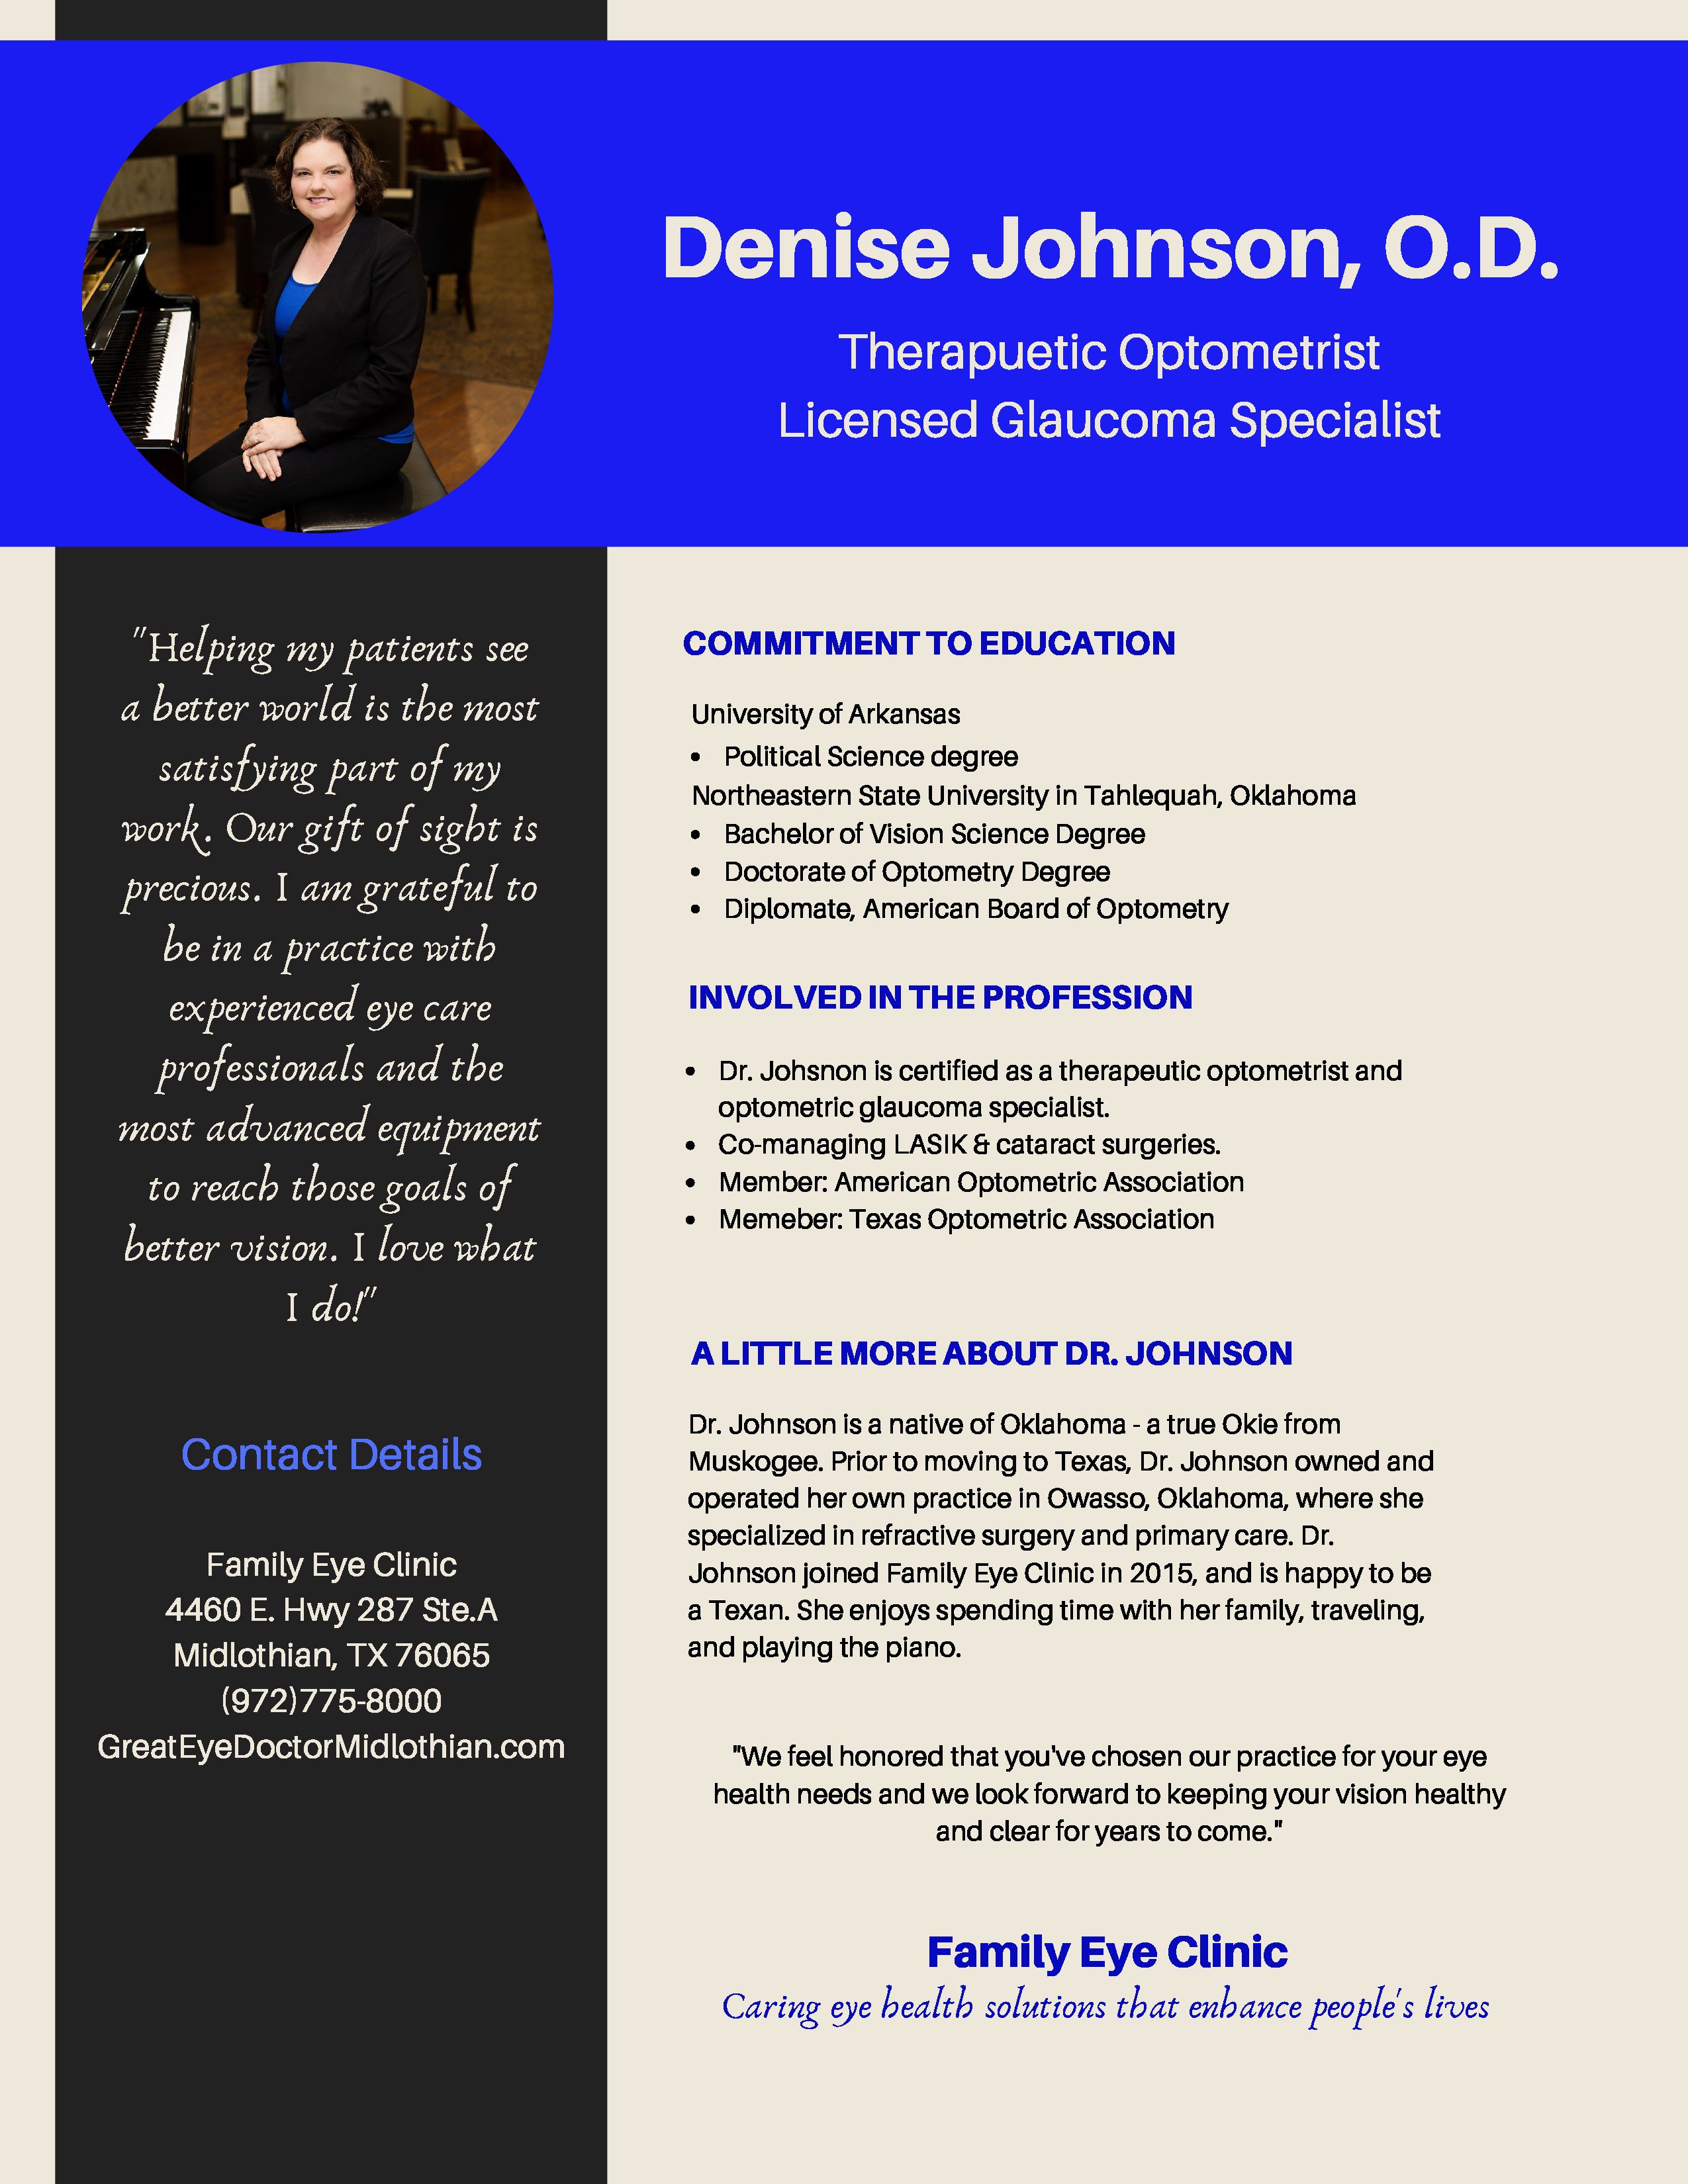 Dr. Denise Johnson, O.D. 